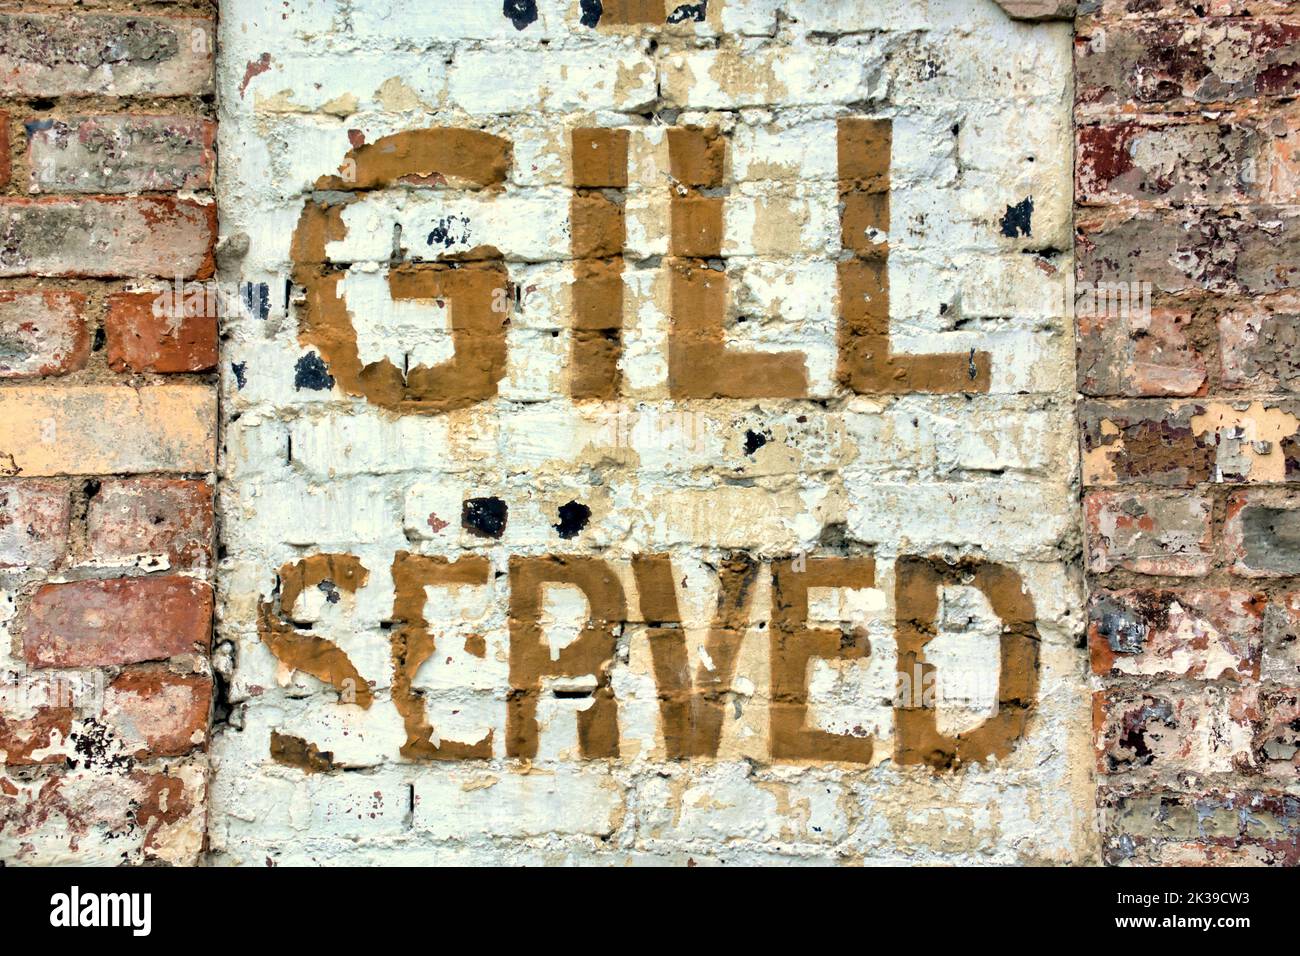 Vecchio pub muro di alcool segno pubblicità piena gill misura di whisky Glasgow, Scozia, Regno Unito Foto Stock